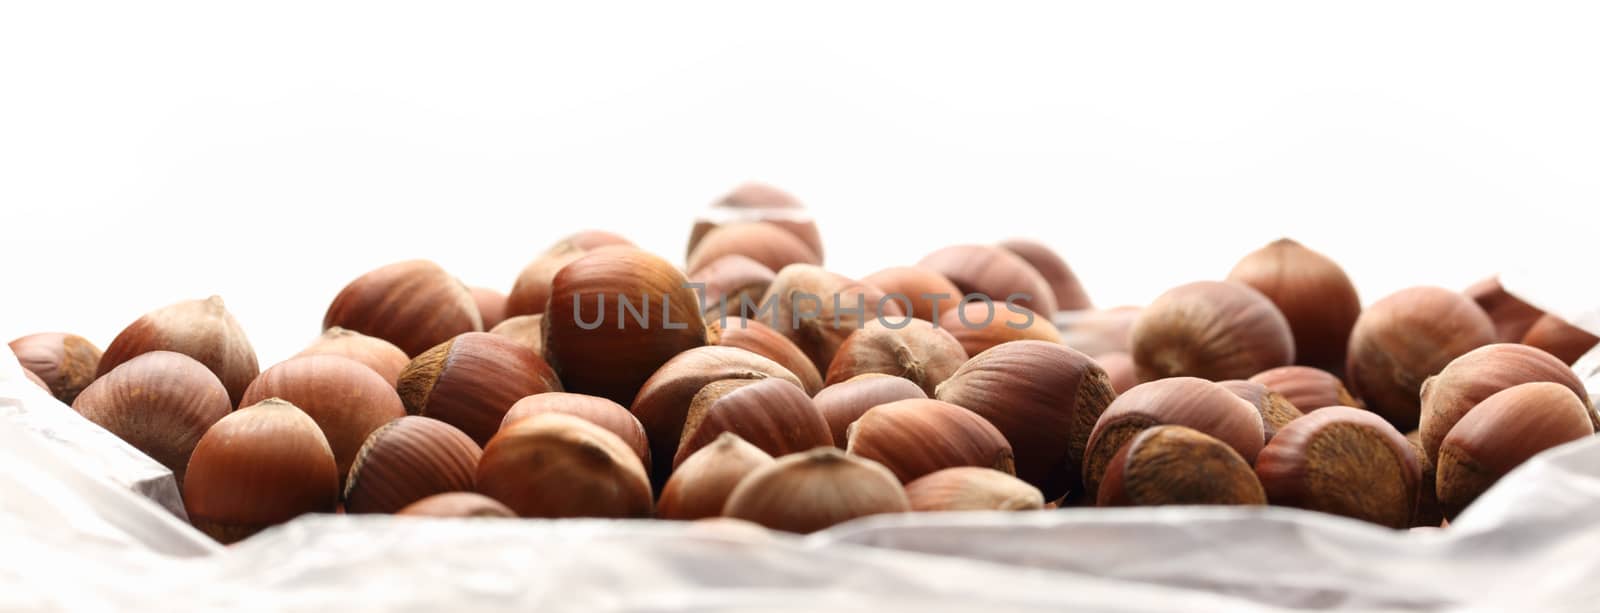 Fresh hazelnuts by Garsya